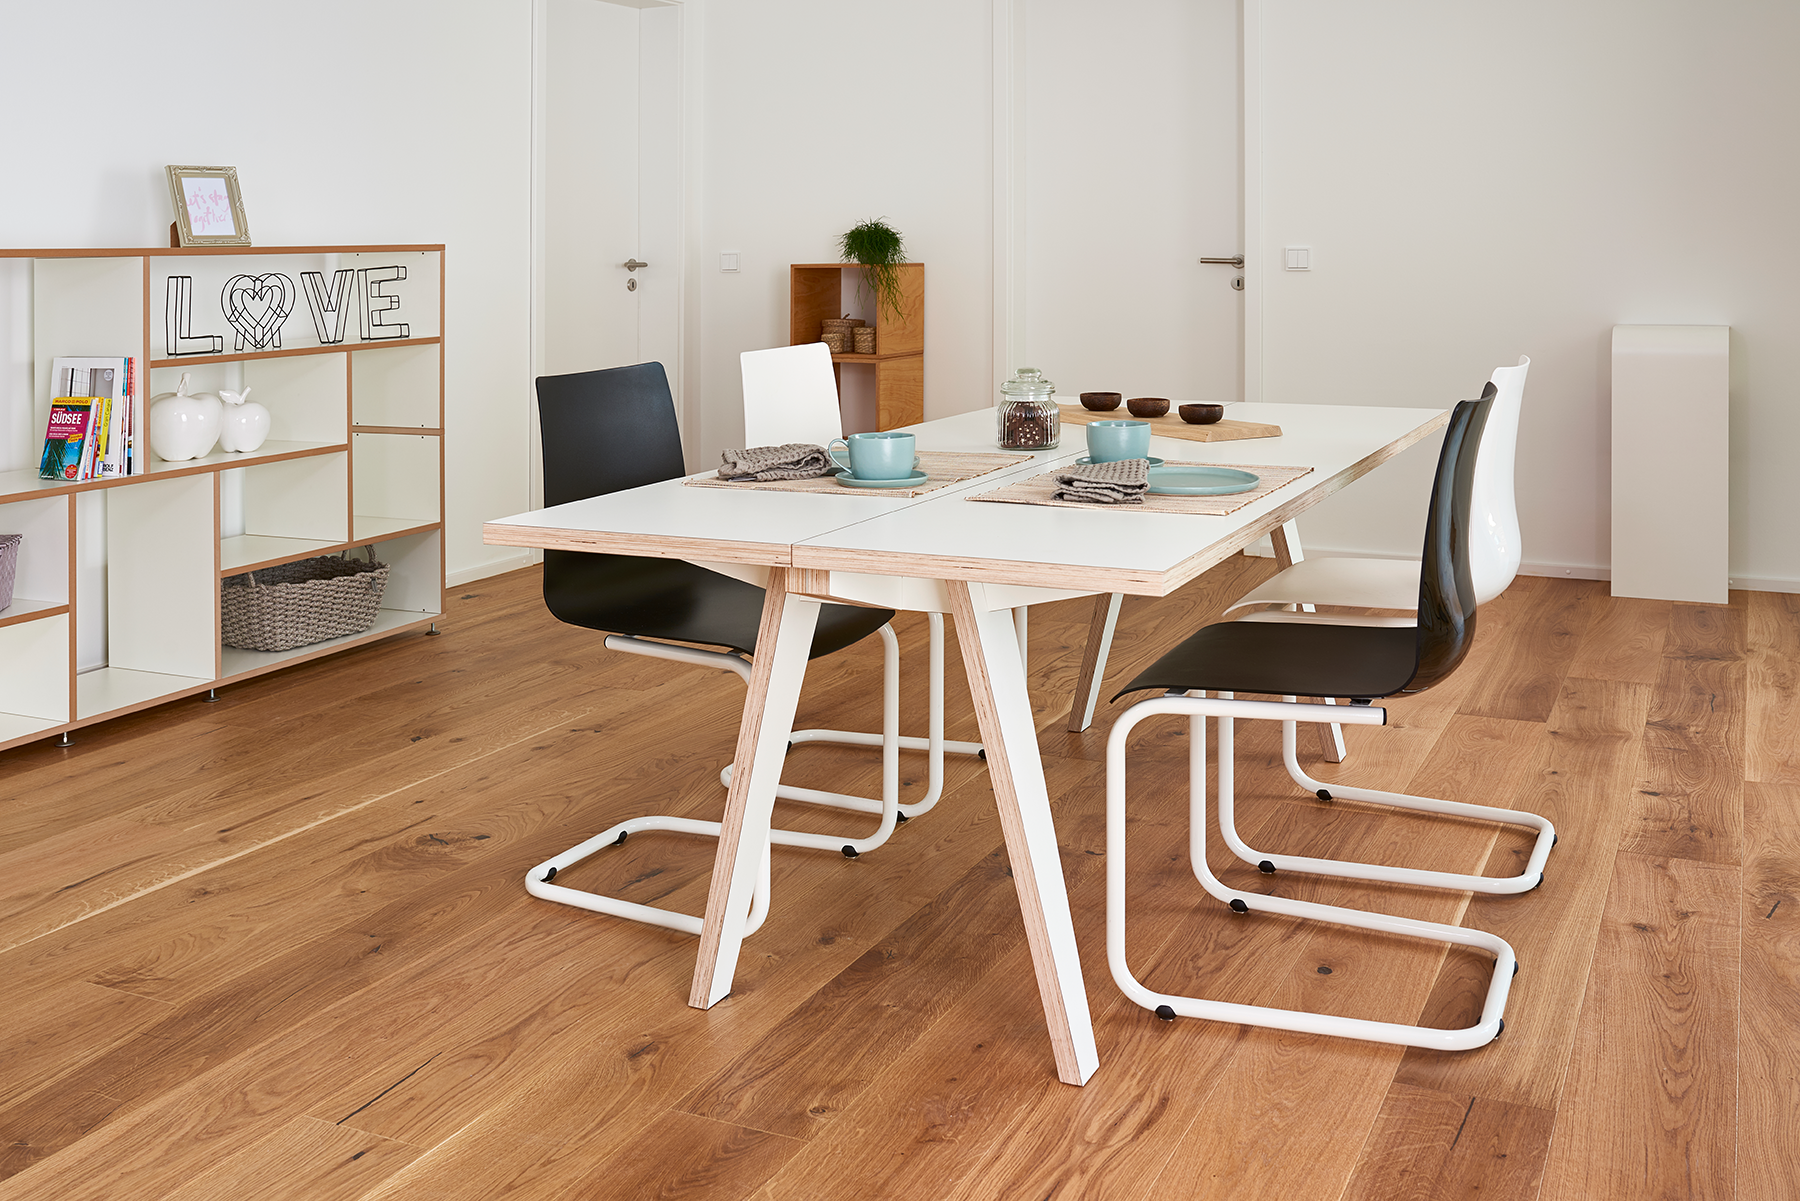 Tojo-stuhl in schwarz präsentiert im Onlineshop von KAQTU Design AG. Freischwinger ist von Tojo